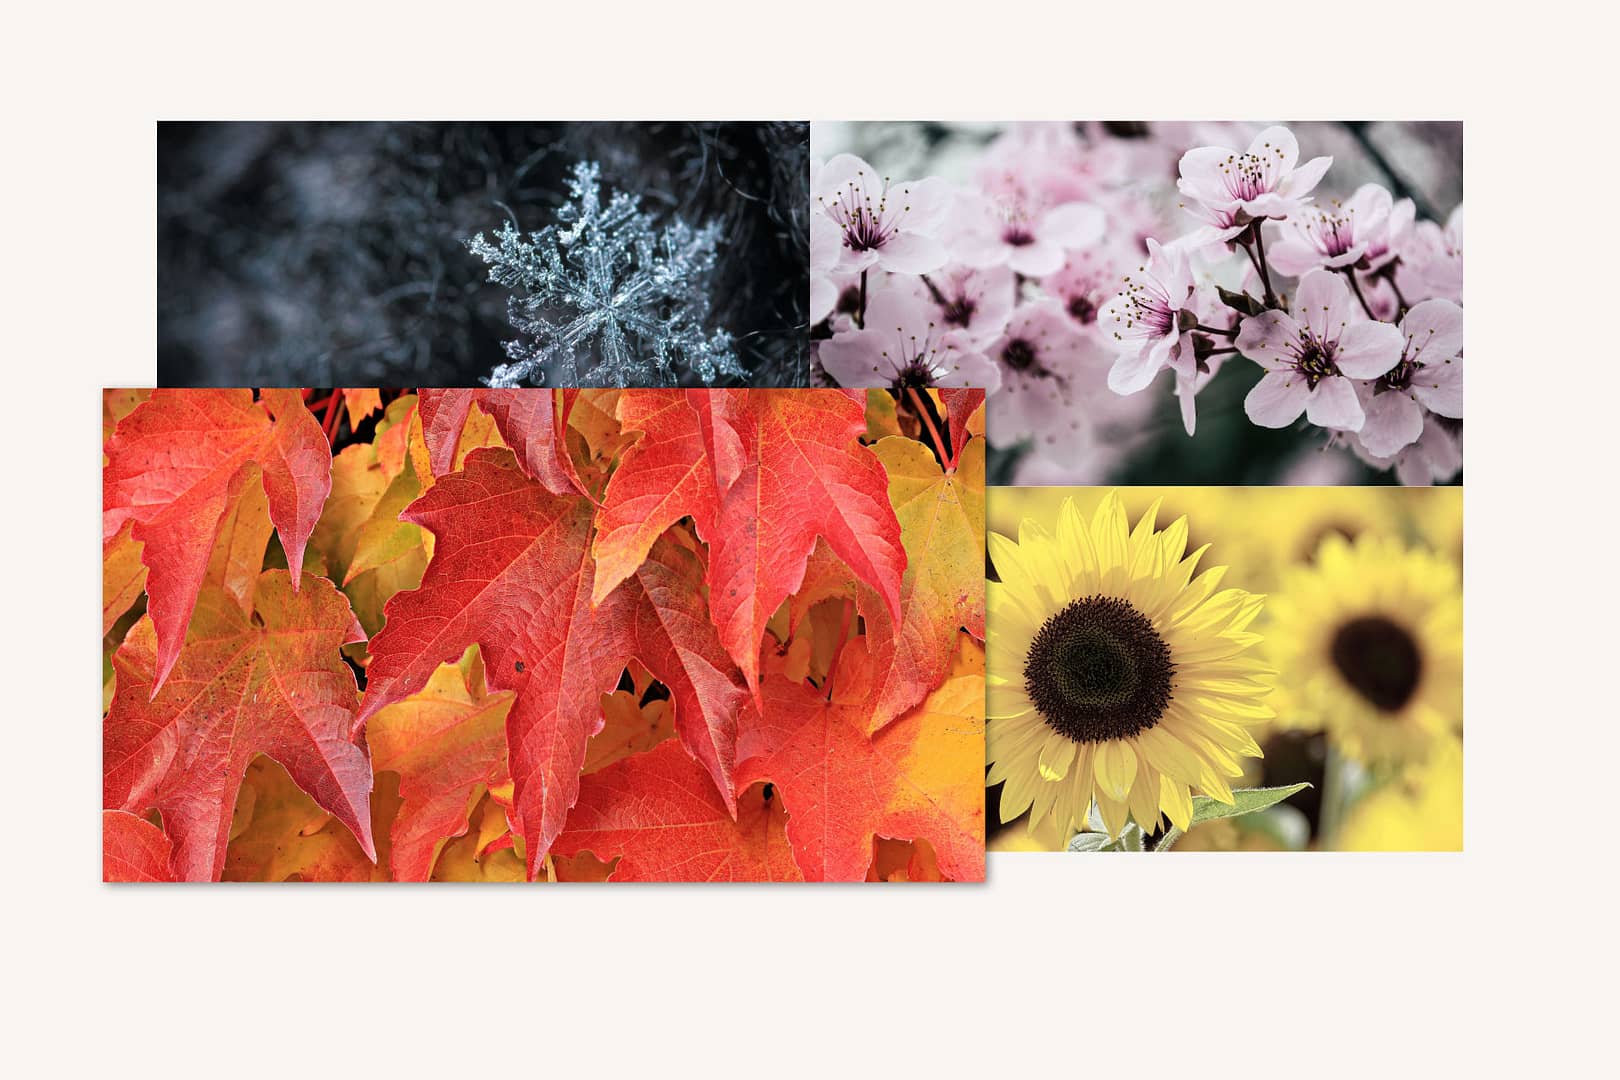 Bild mit dem hervorgehobenen Foto von orange-roten Ahornblättern links unten im Bildbereich, und im Hintergrund jeweils ein Foto von, einer blauen Schneeflocke links oben, rosa Kirschblüten rechts oben und gelben Sonnenblumen rechts unten im Bildbereich